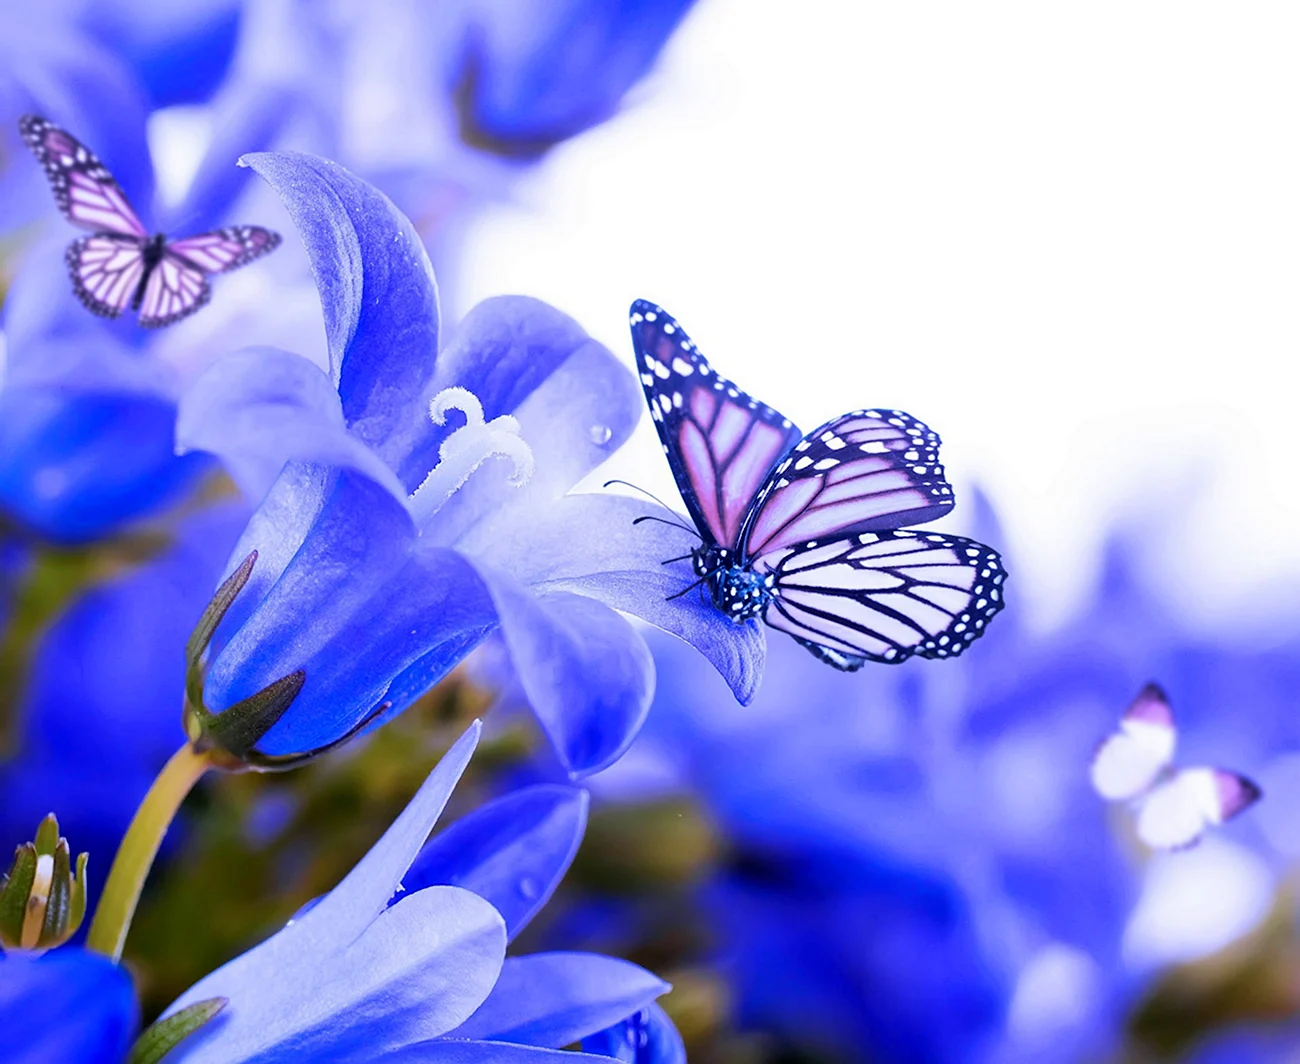 Бабочка на цветке. Красивая картинка